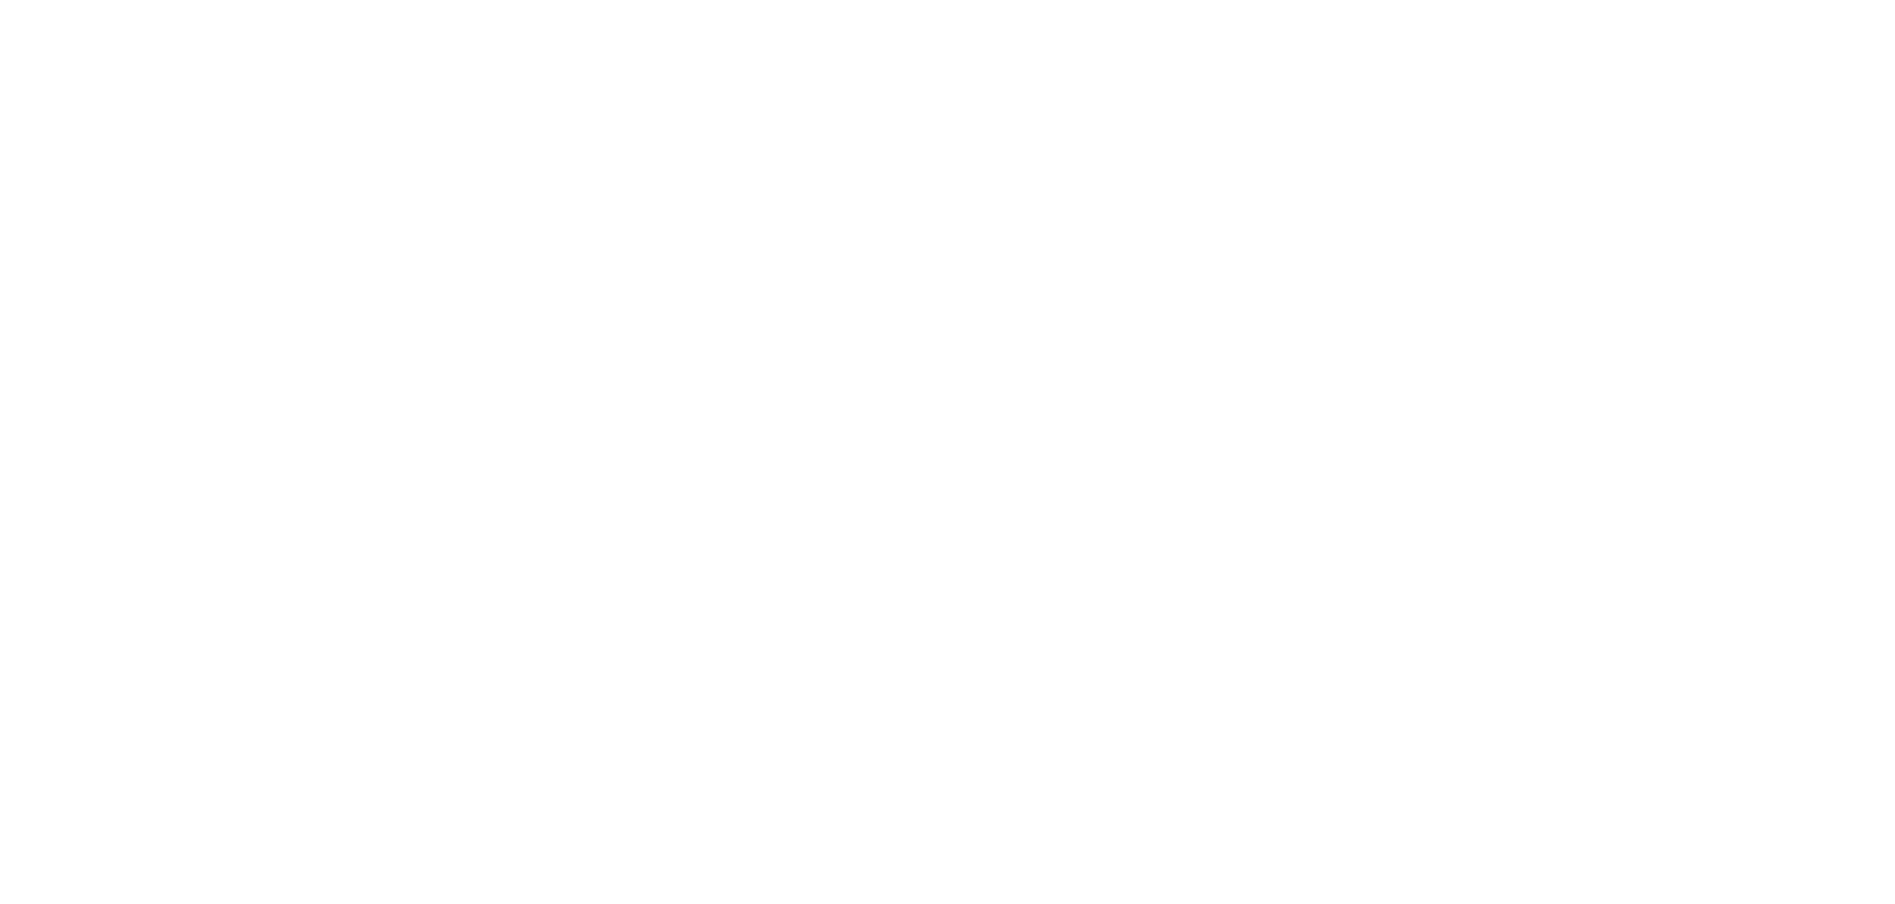 Главный экран лендинга для ЖК «Вдохновение»